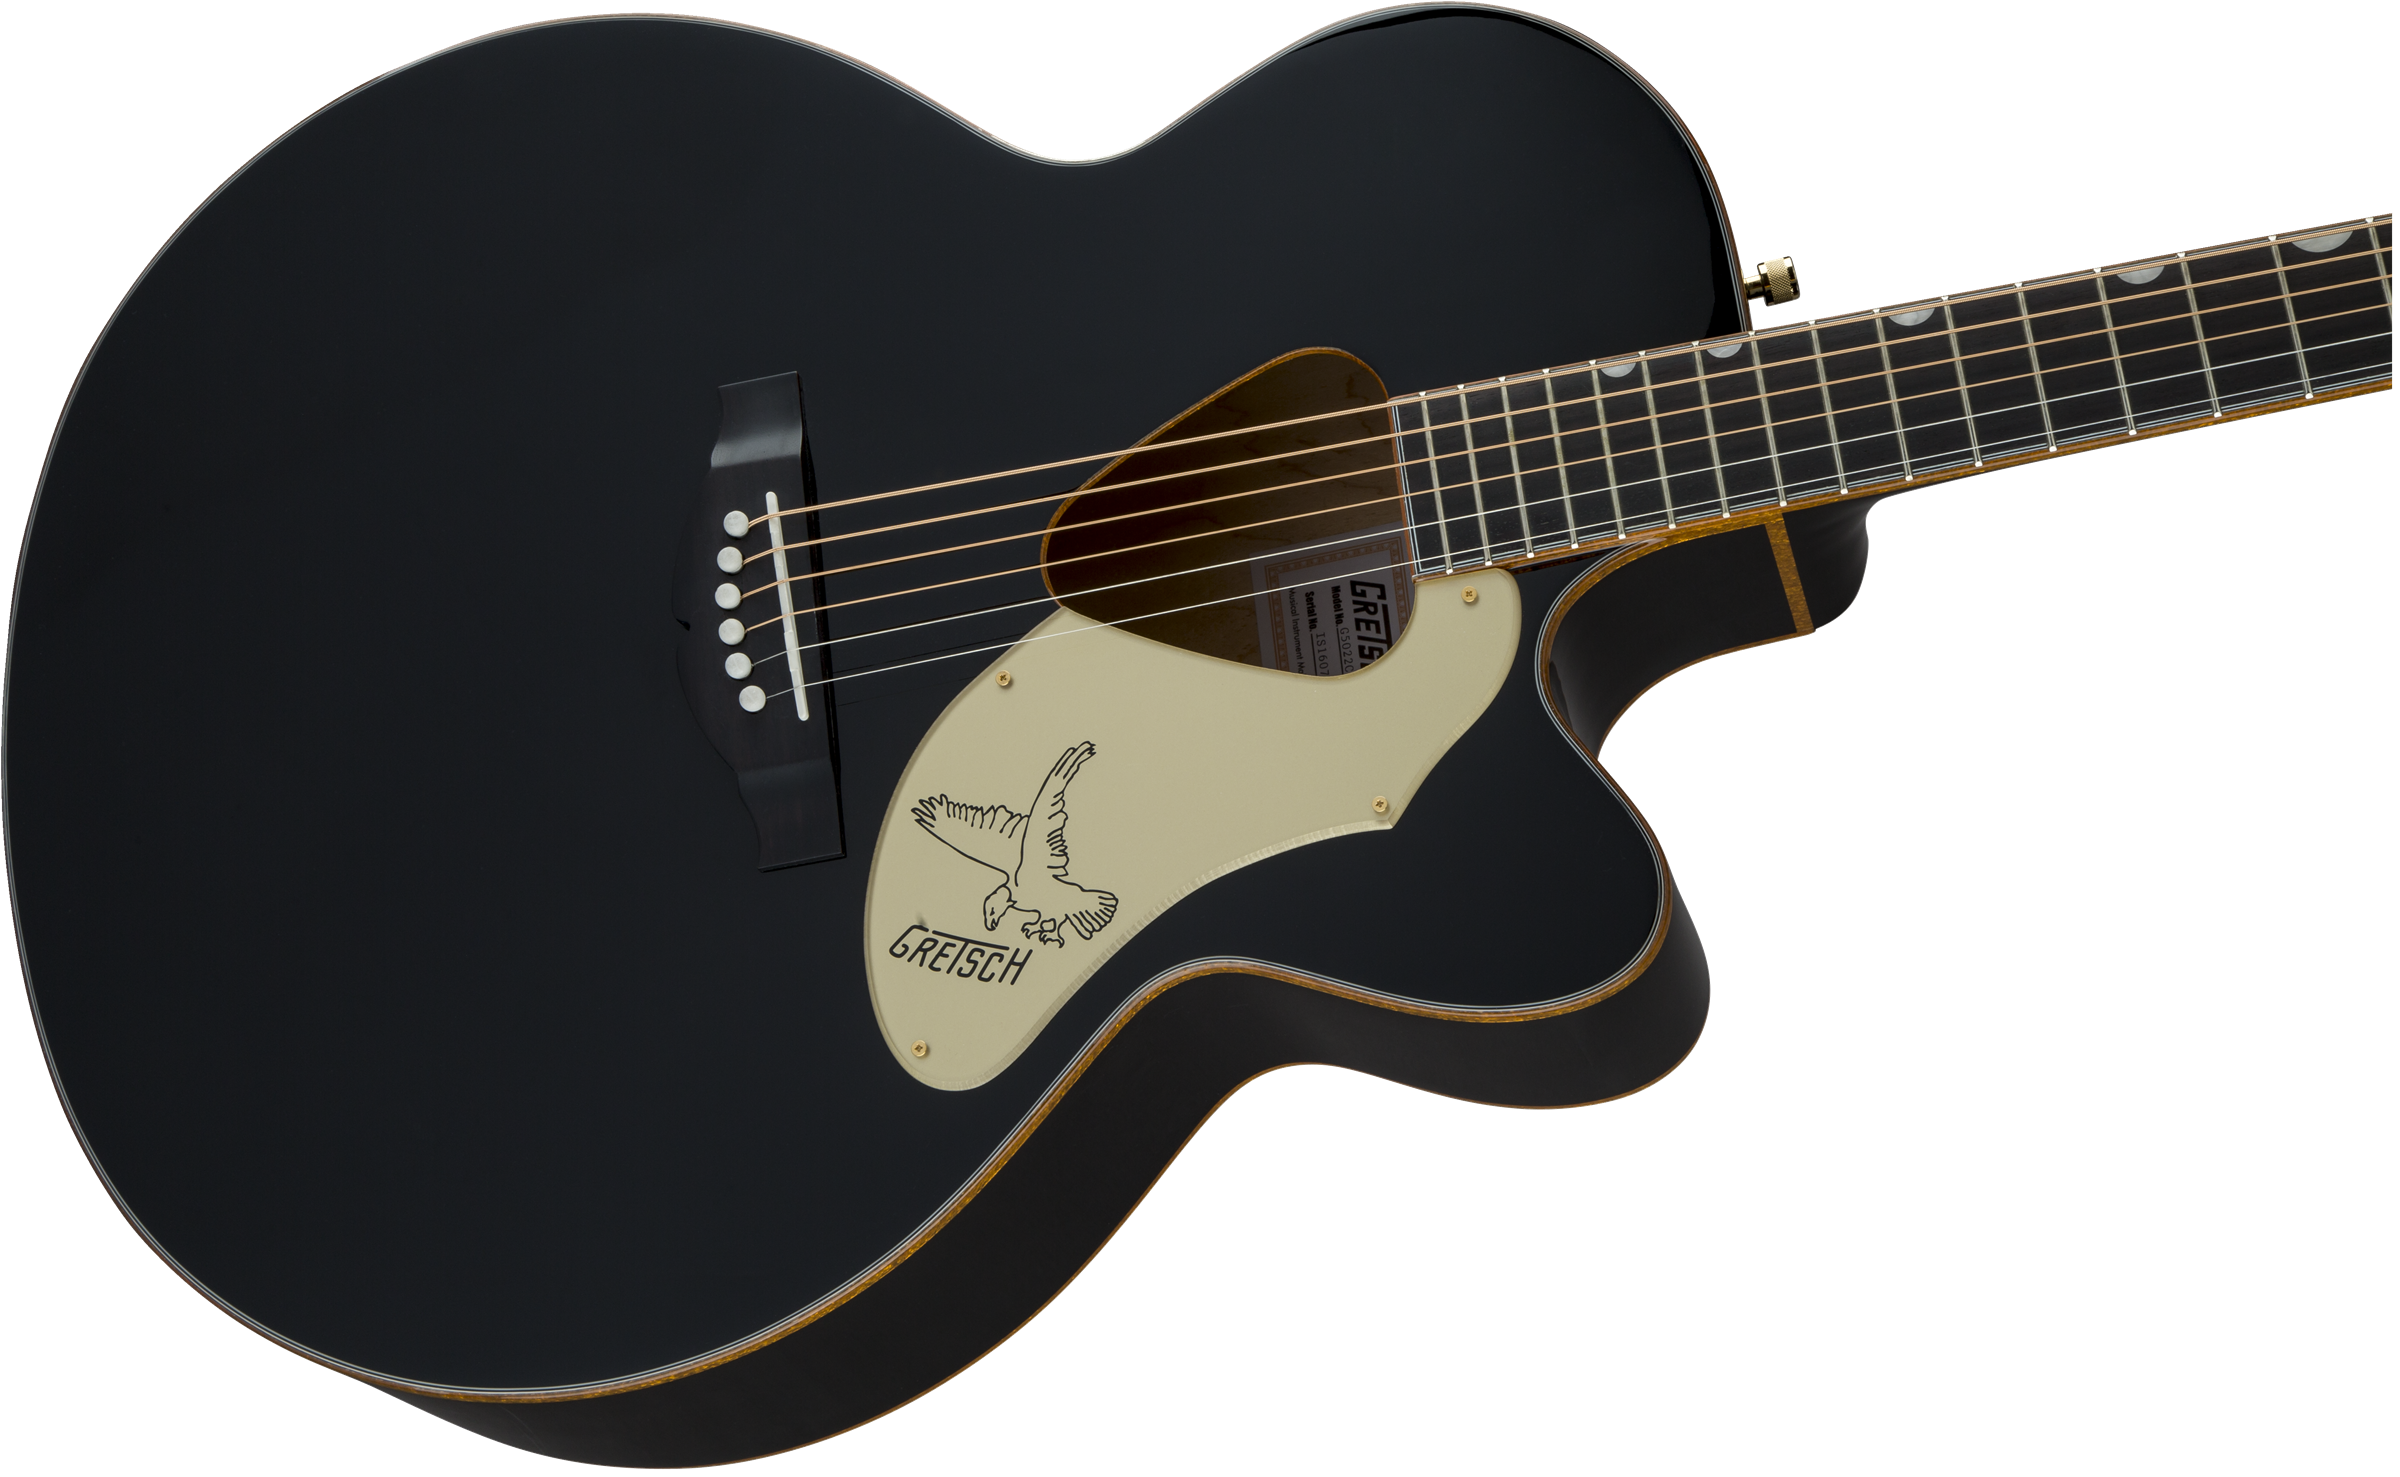 Gretsch G5022cbfe Rancher Falcon Jumbo Cw Epicea Erable Rw - Black - Guitare Electro Acoustique - Variation 3